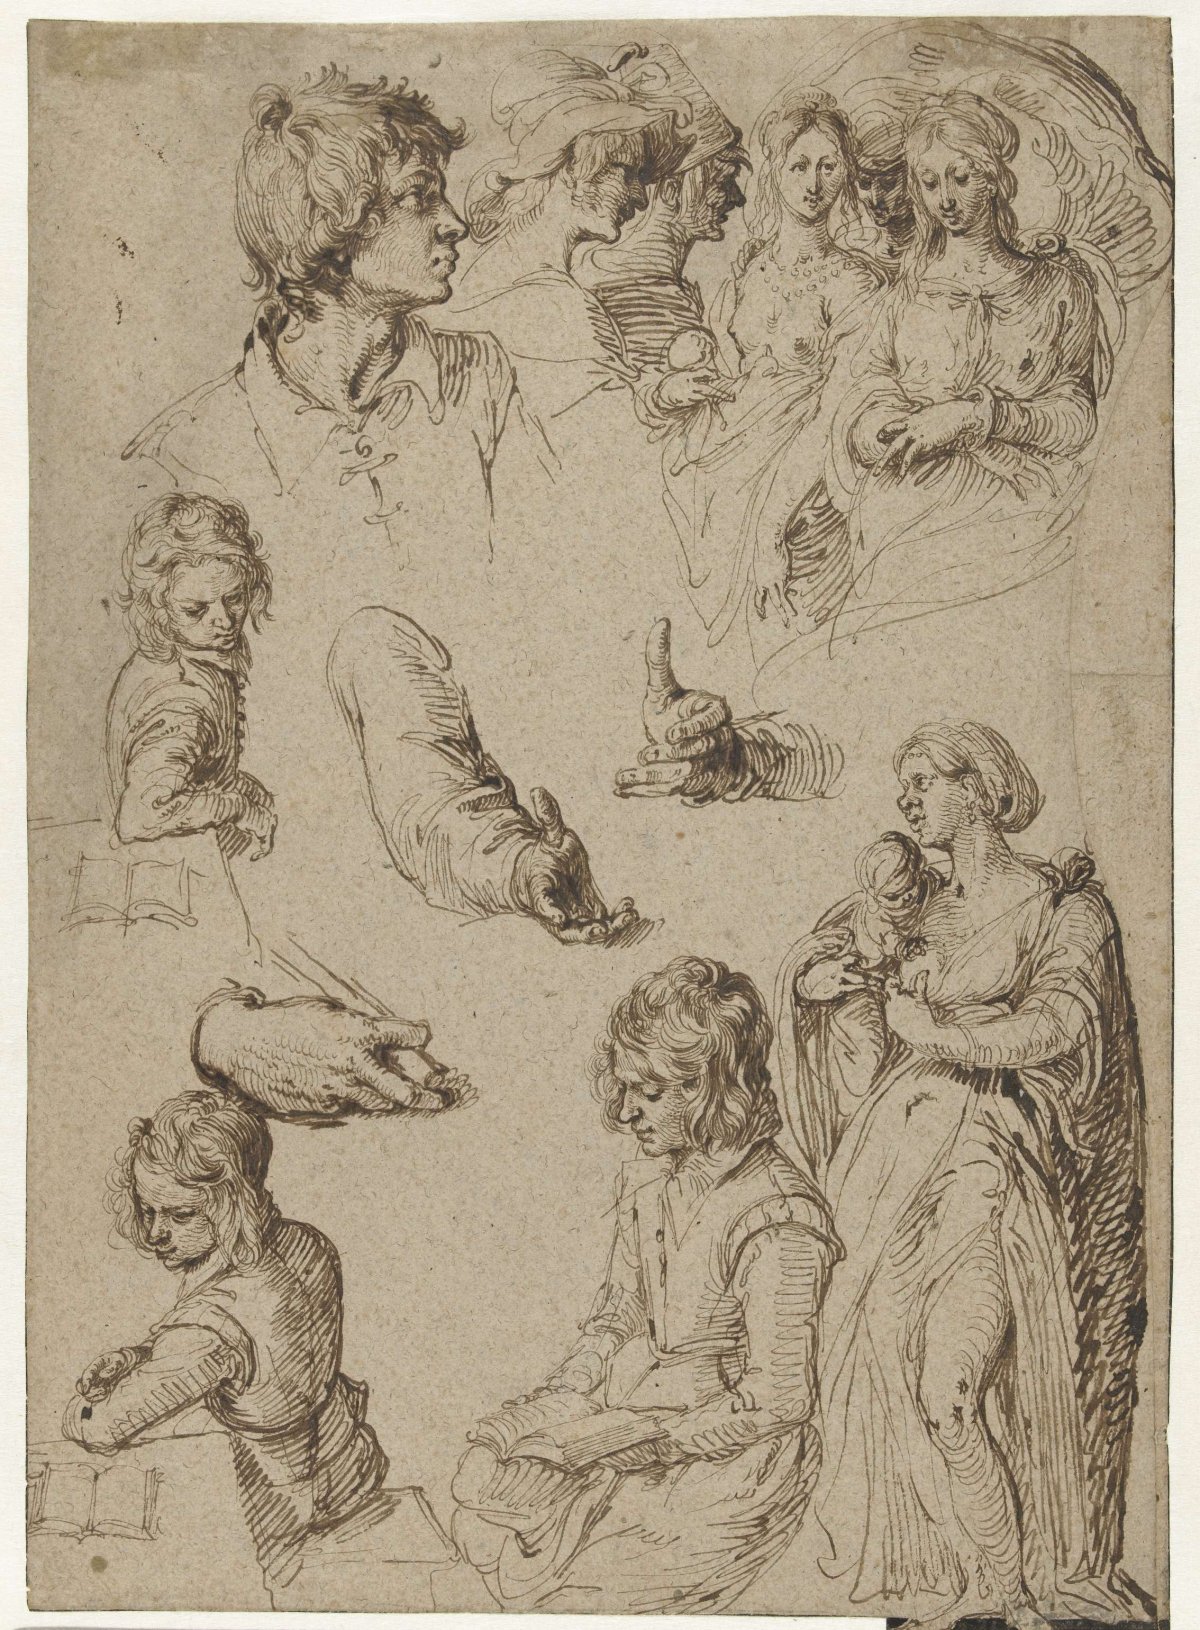 Study of hands and figures, Jacques de Gheyn (II), 1604